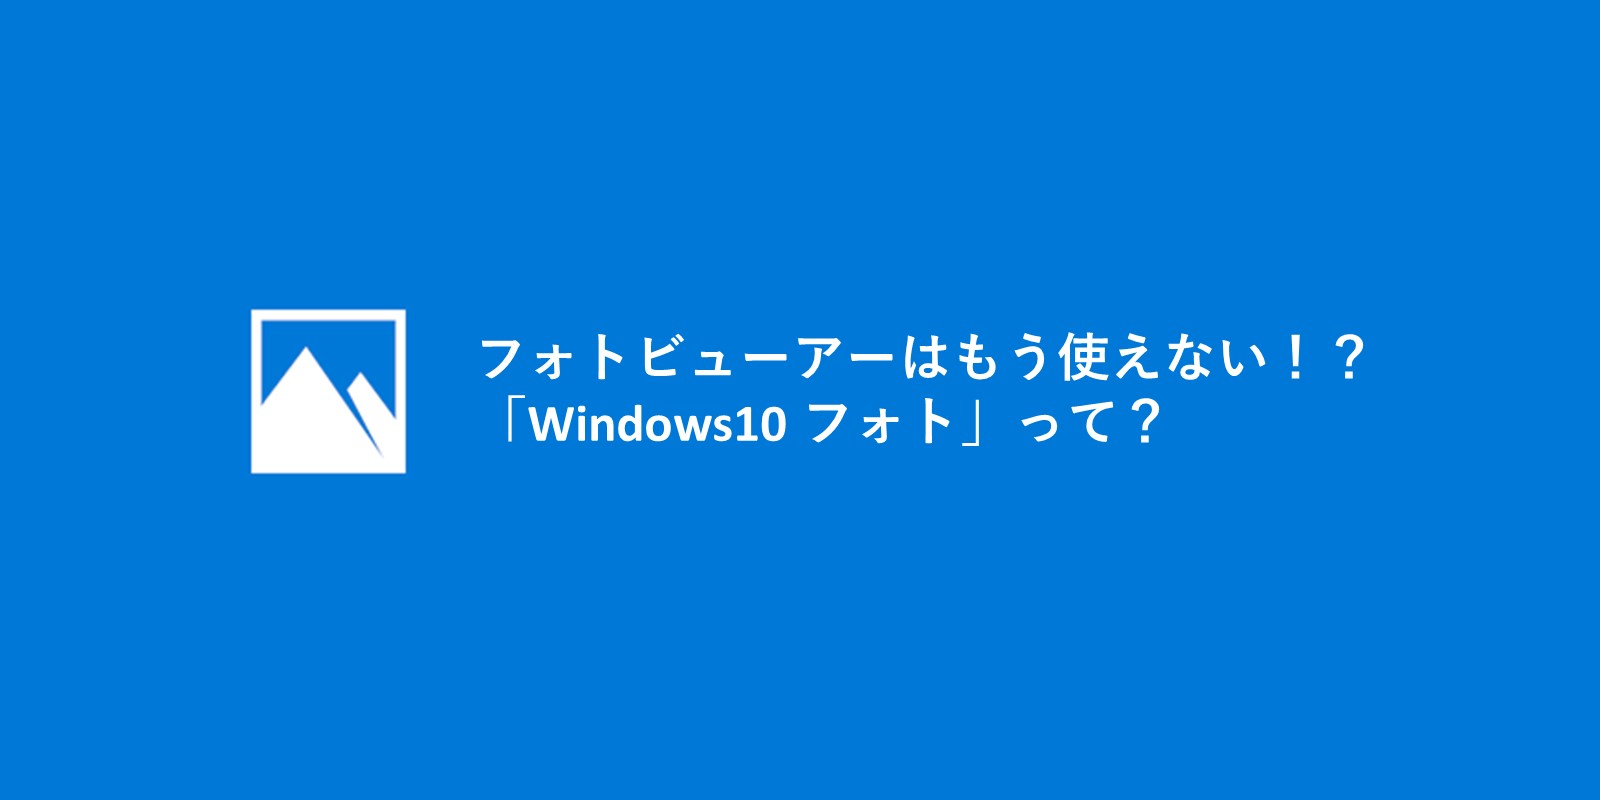 フォトビューアーはもう使えない Windows10 フォト とは